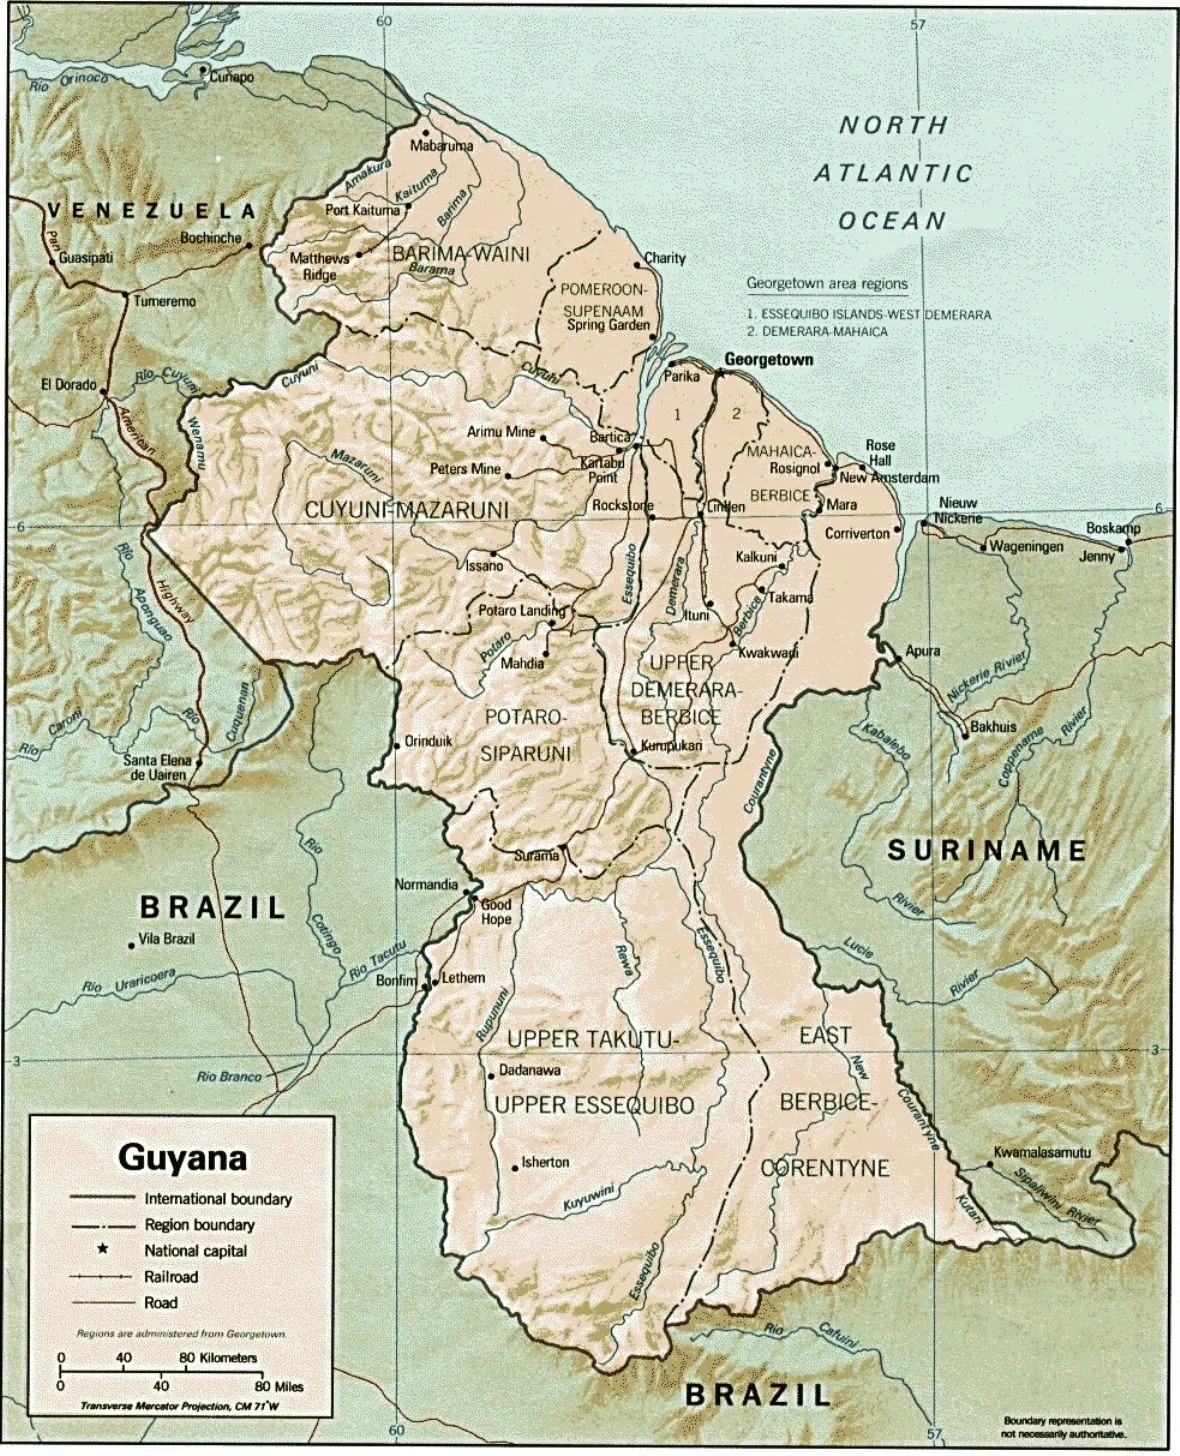 Mapa geográfico de Guayana: geografía, clima, flora, fauna...